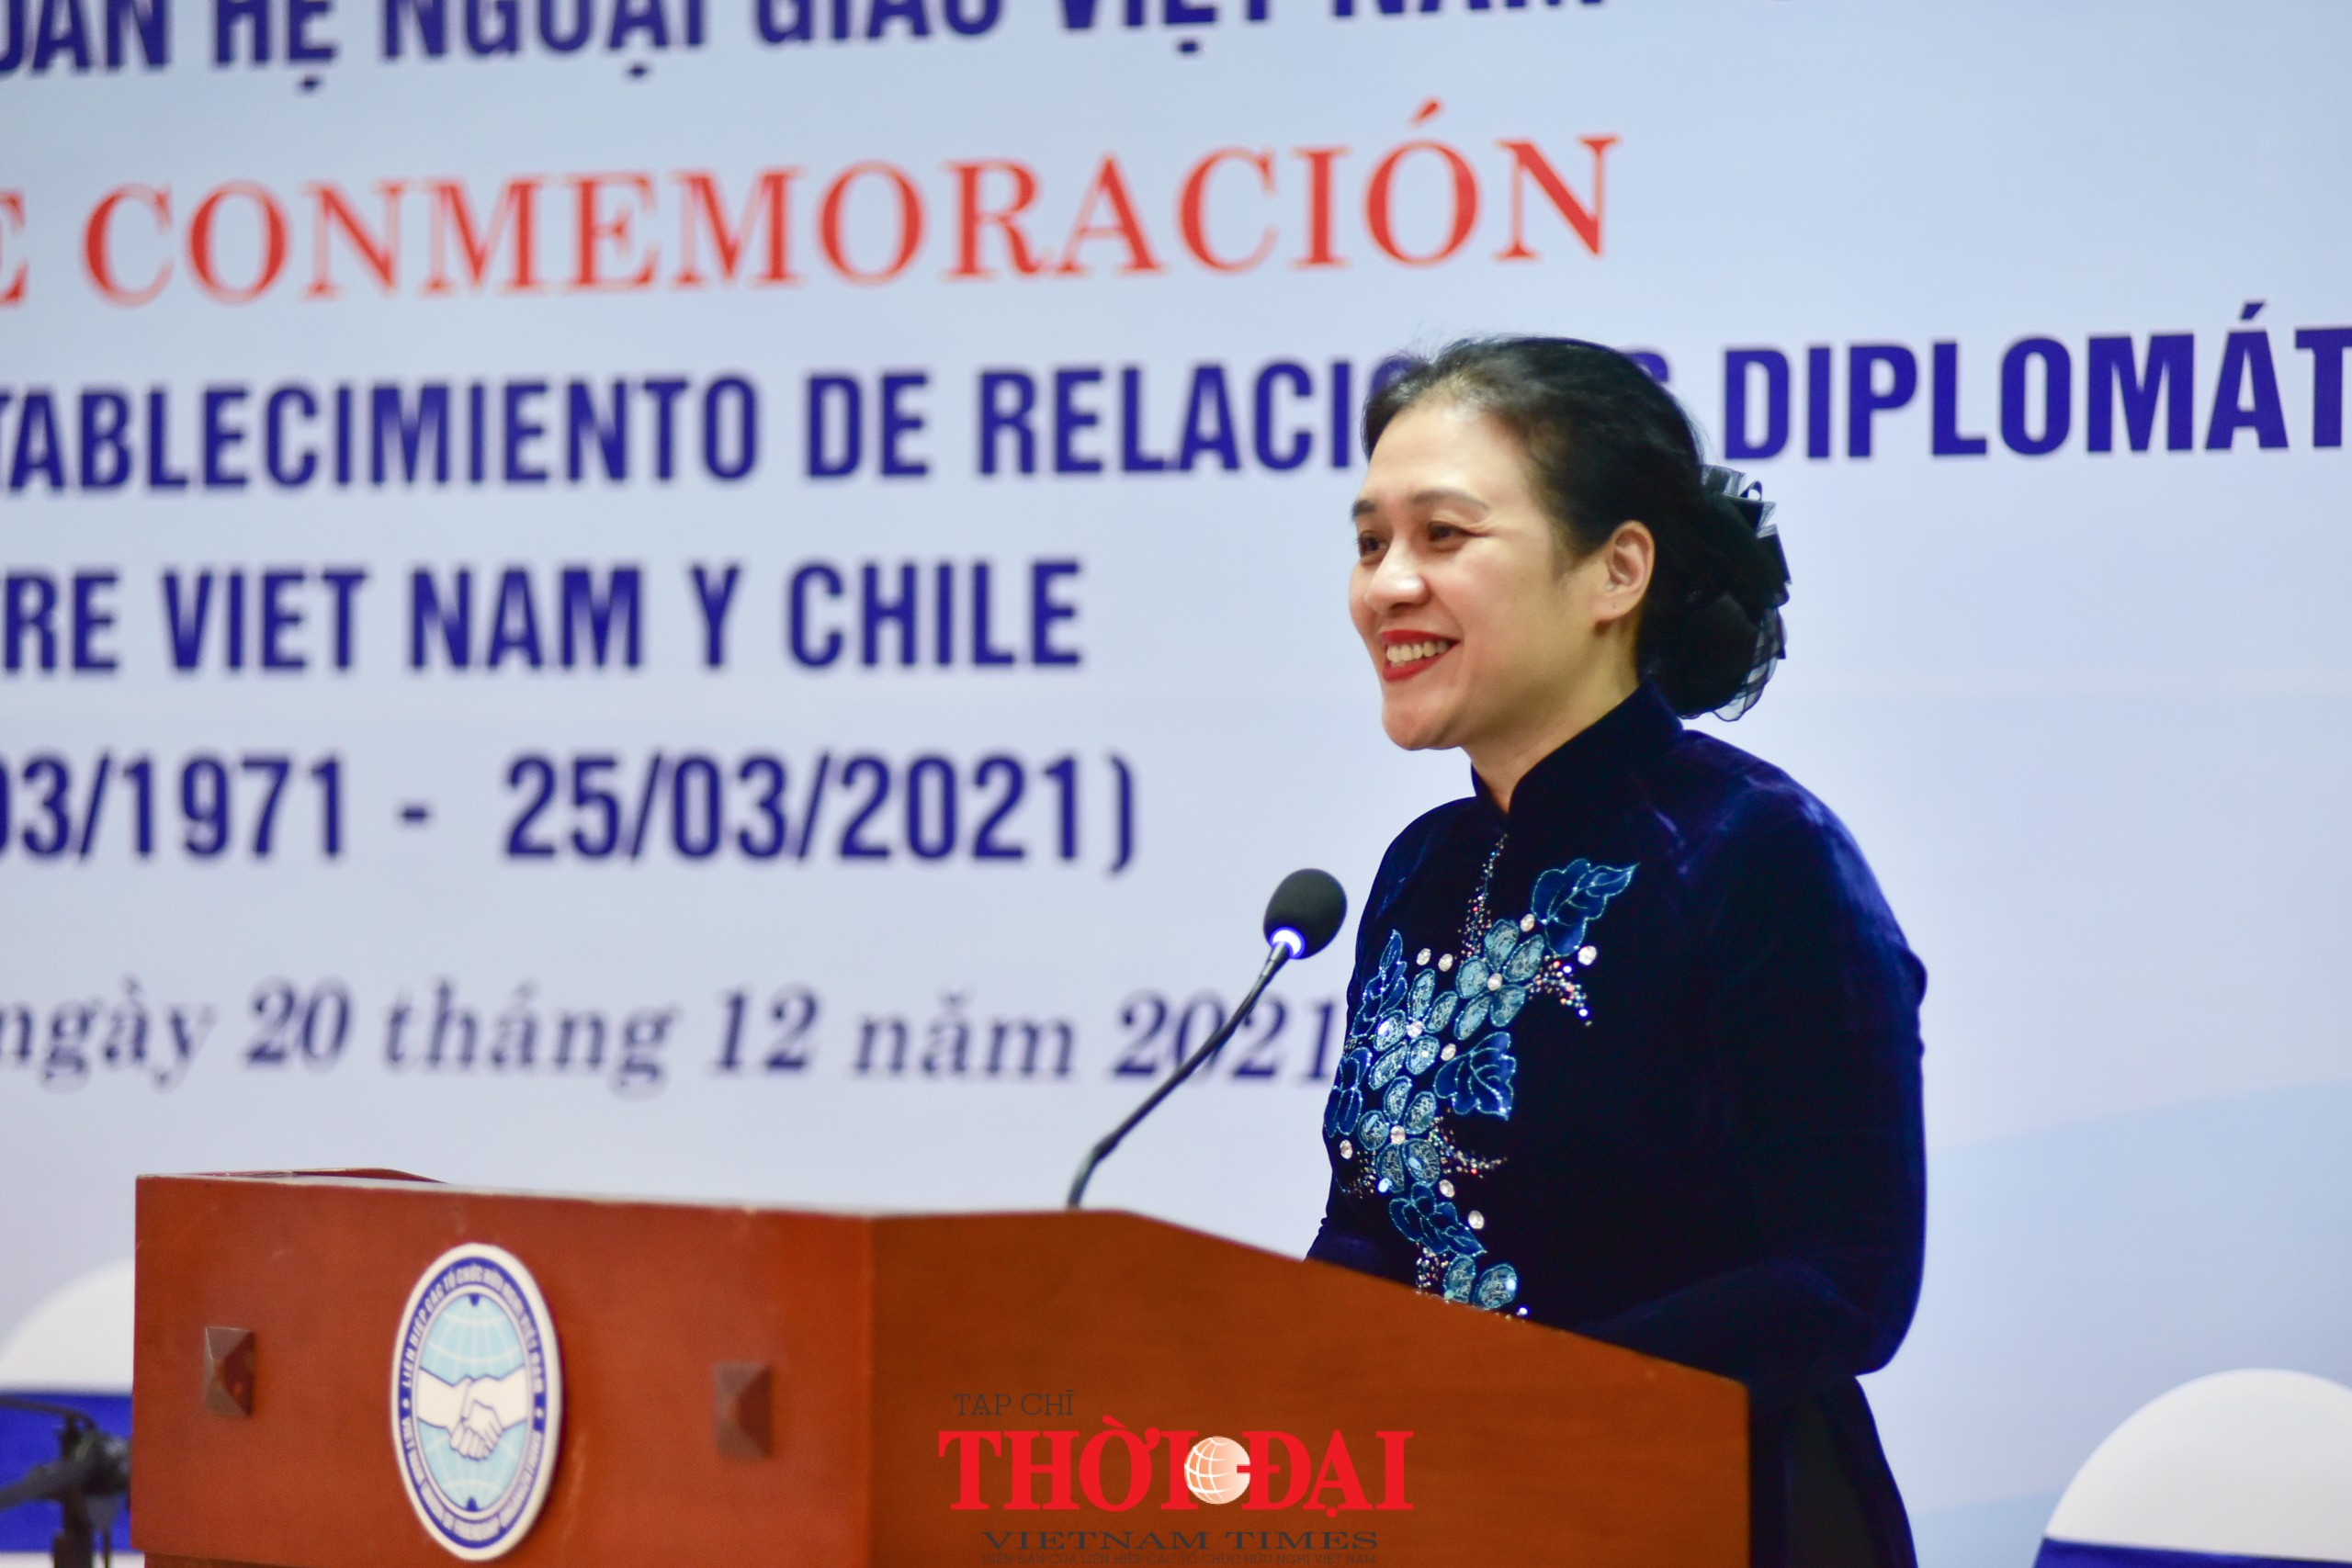 Việt Nam - Chile: Tình đoàn kết hữu nghị là di sản vô giá